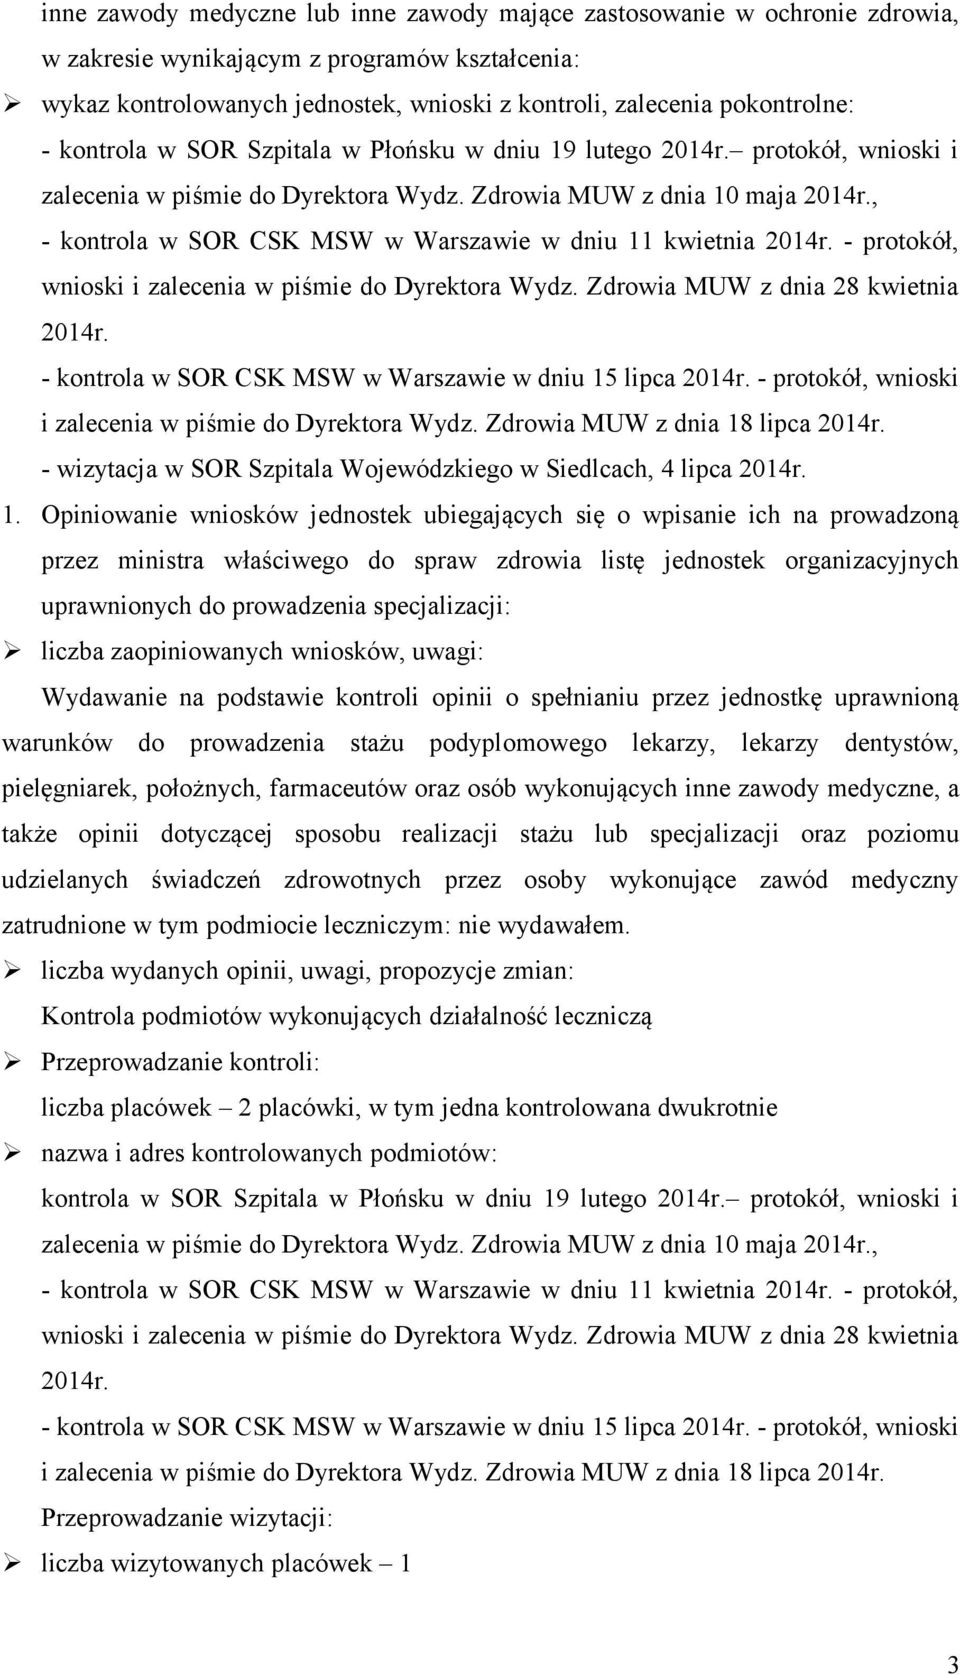 , - kontrola w SOR CSK MSW w Warszawie w dniu 11 kwietnia 2014r. - protokół, wnioski i zalecenia w piśmie do Dyrektora Wydz. Zdrowia MUW z dnia 28 kwietnia 2014r.